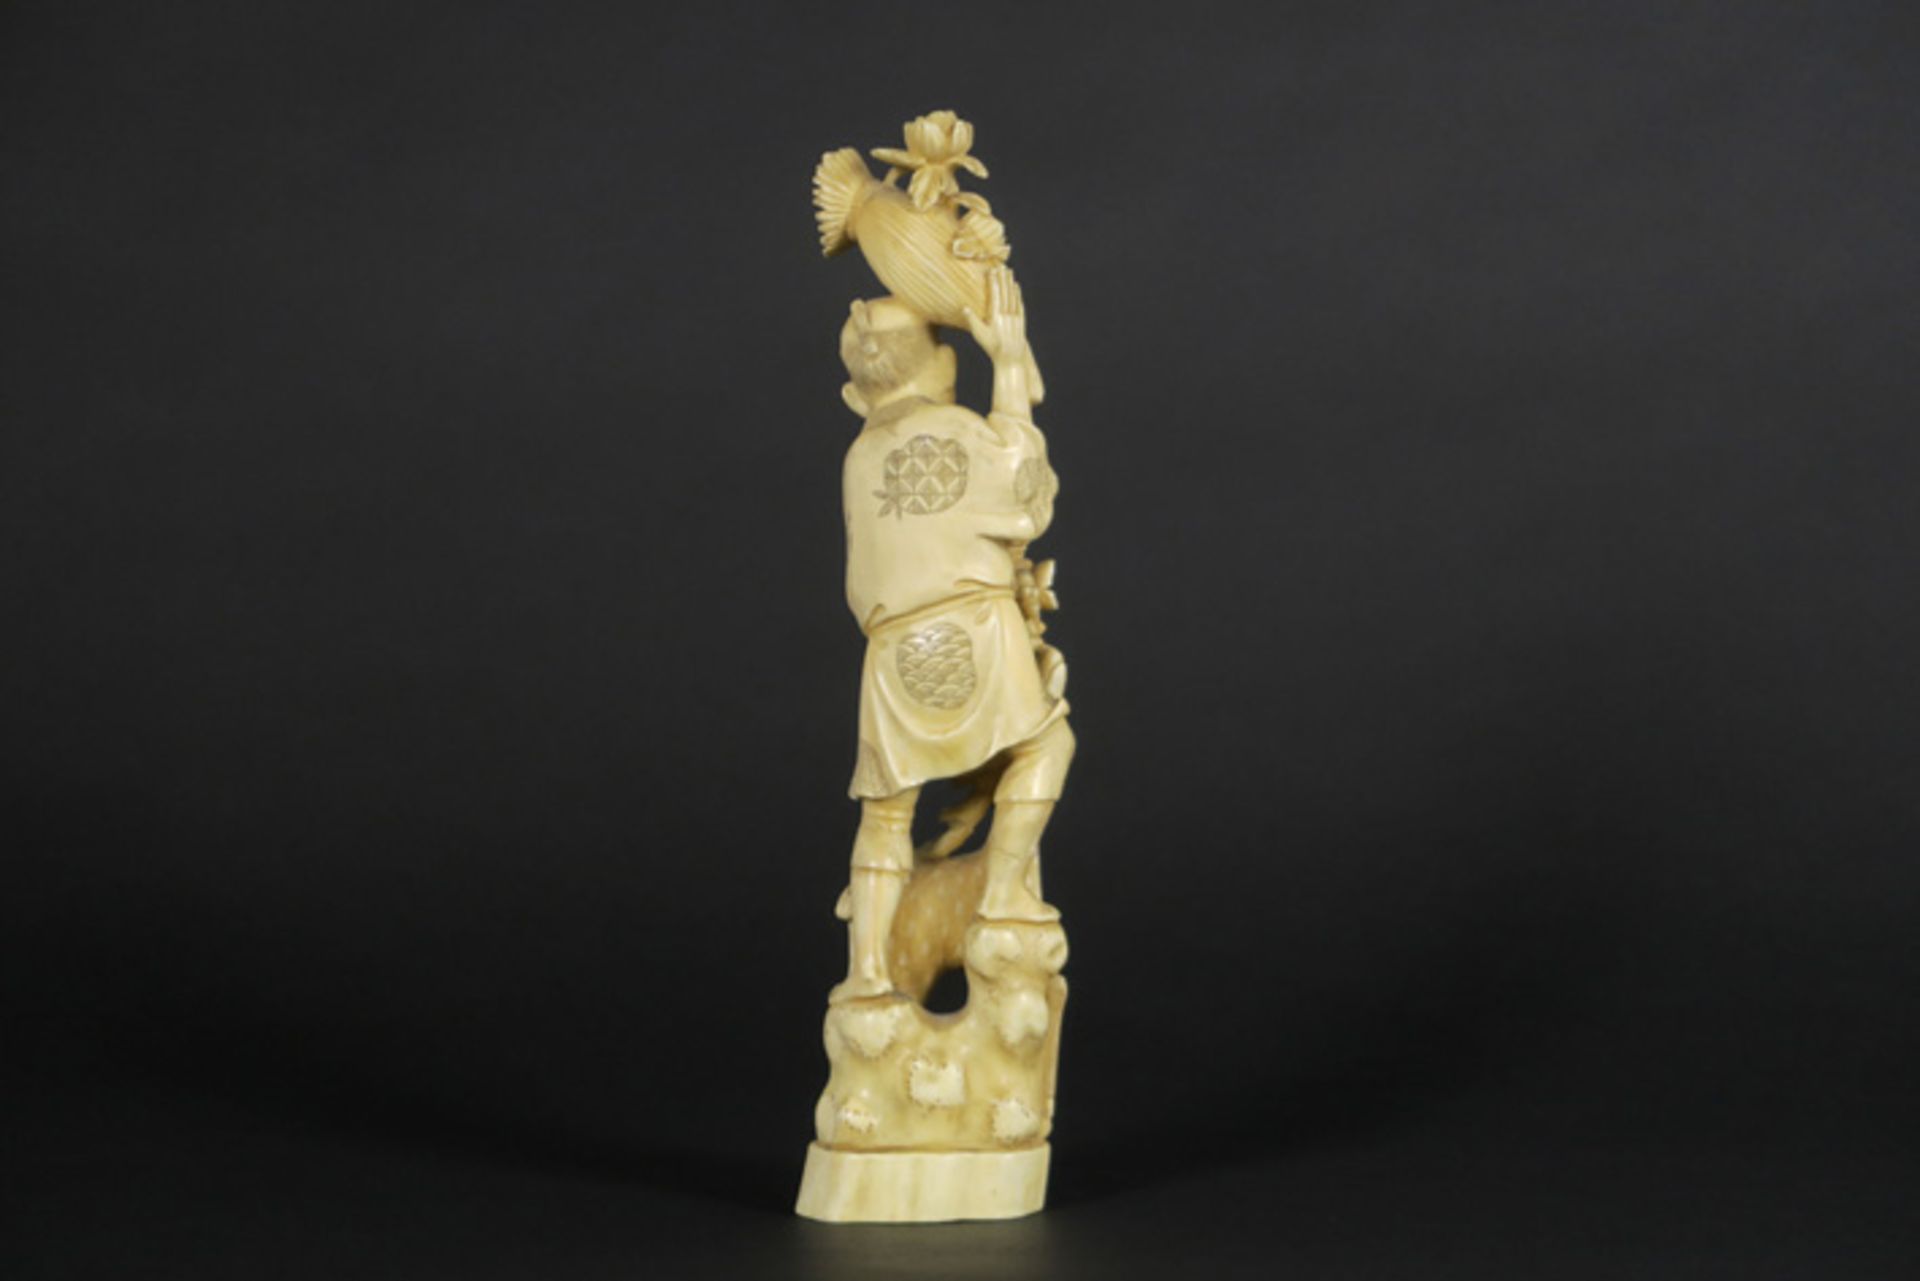 Antieke Japanse sculptuur in ivoor : "Man met hert" - hoogte : 30 cm - 19° eeuw [...] - Bild 3 aus 5